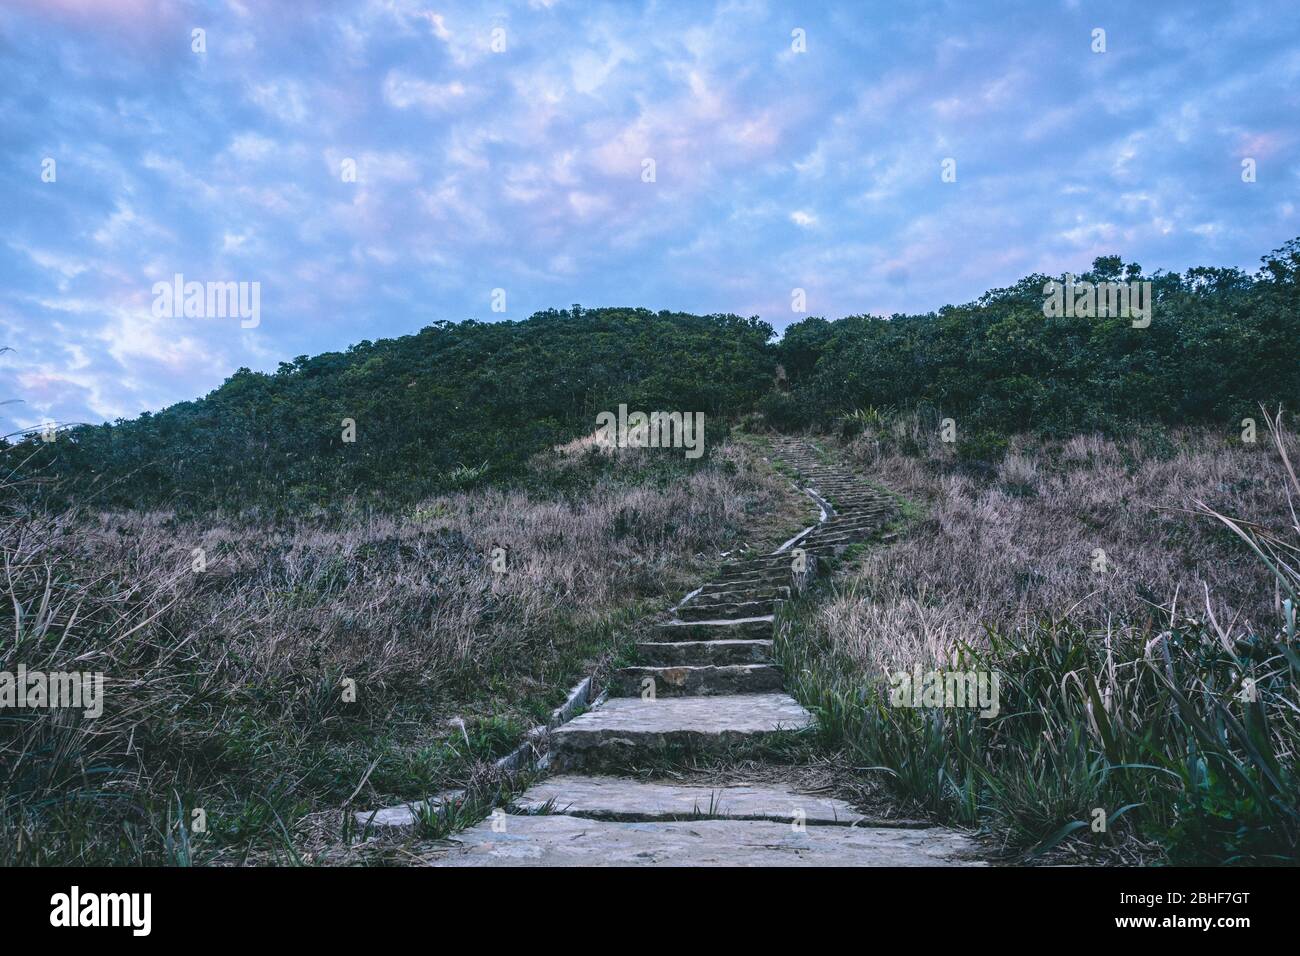 Treppen des Twin Peak Hong Kong. Wanderweg in Hong Kong. Treppensteigen während der blauen Stunde. Herausforderung meistern. Streben Sie nach Erfolg. Stockfoto